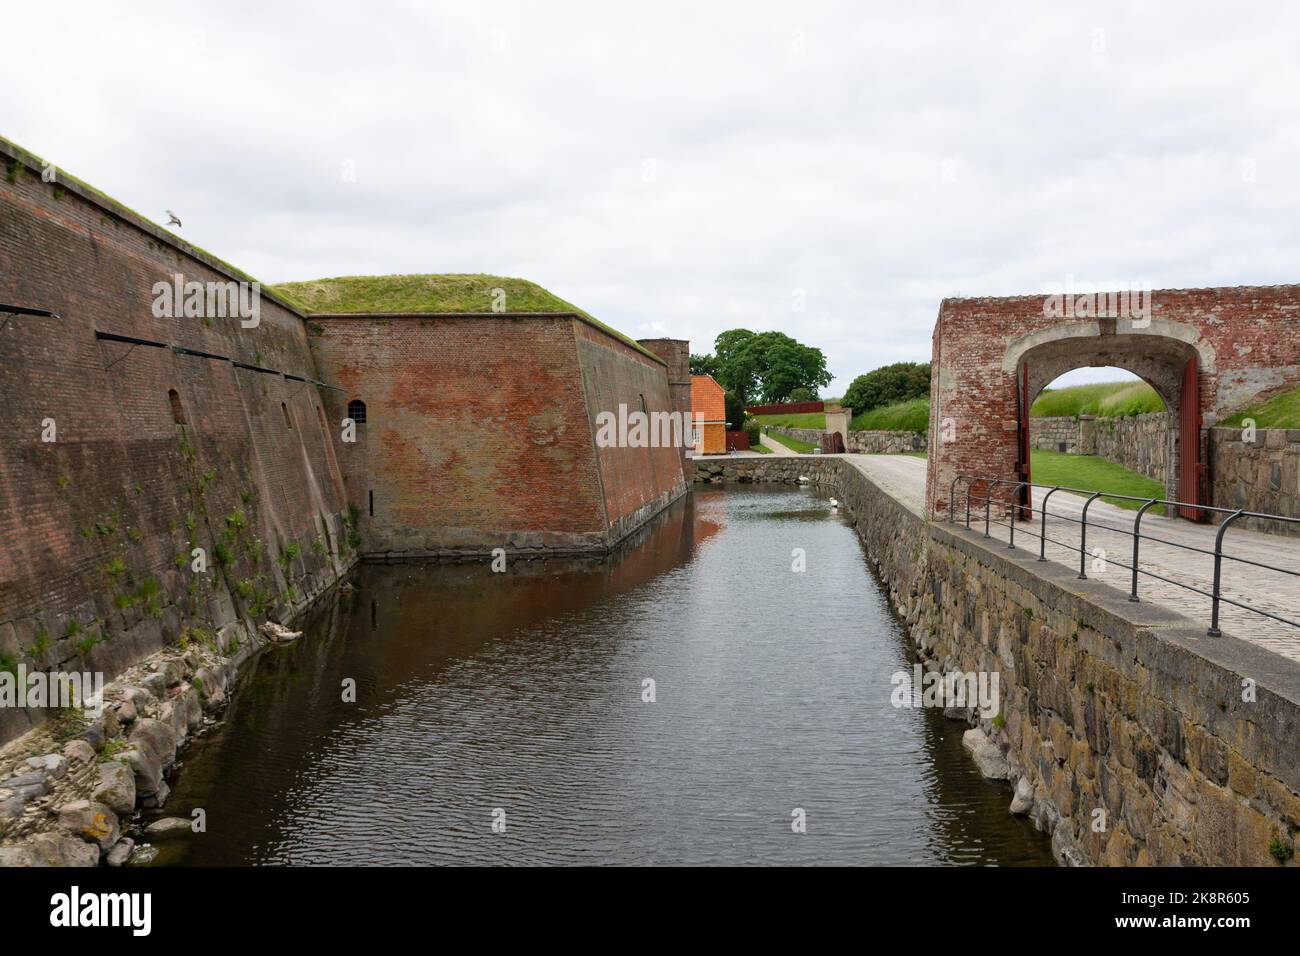 The water well outside the historic Kronborg castle in Helsingor, Denmark Stock Photo